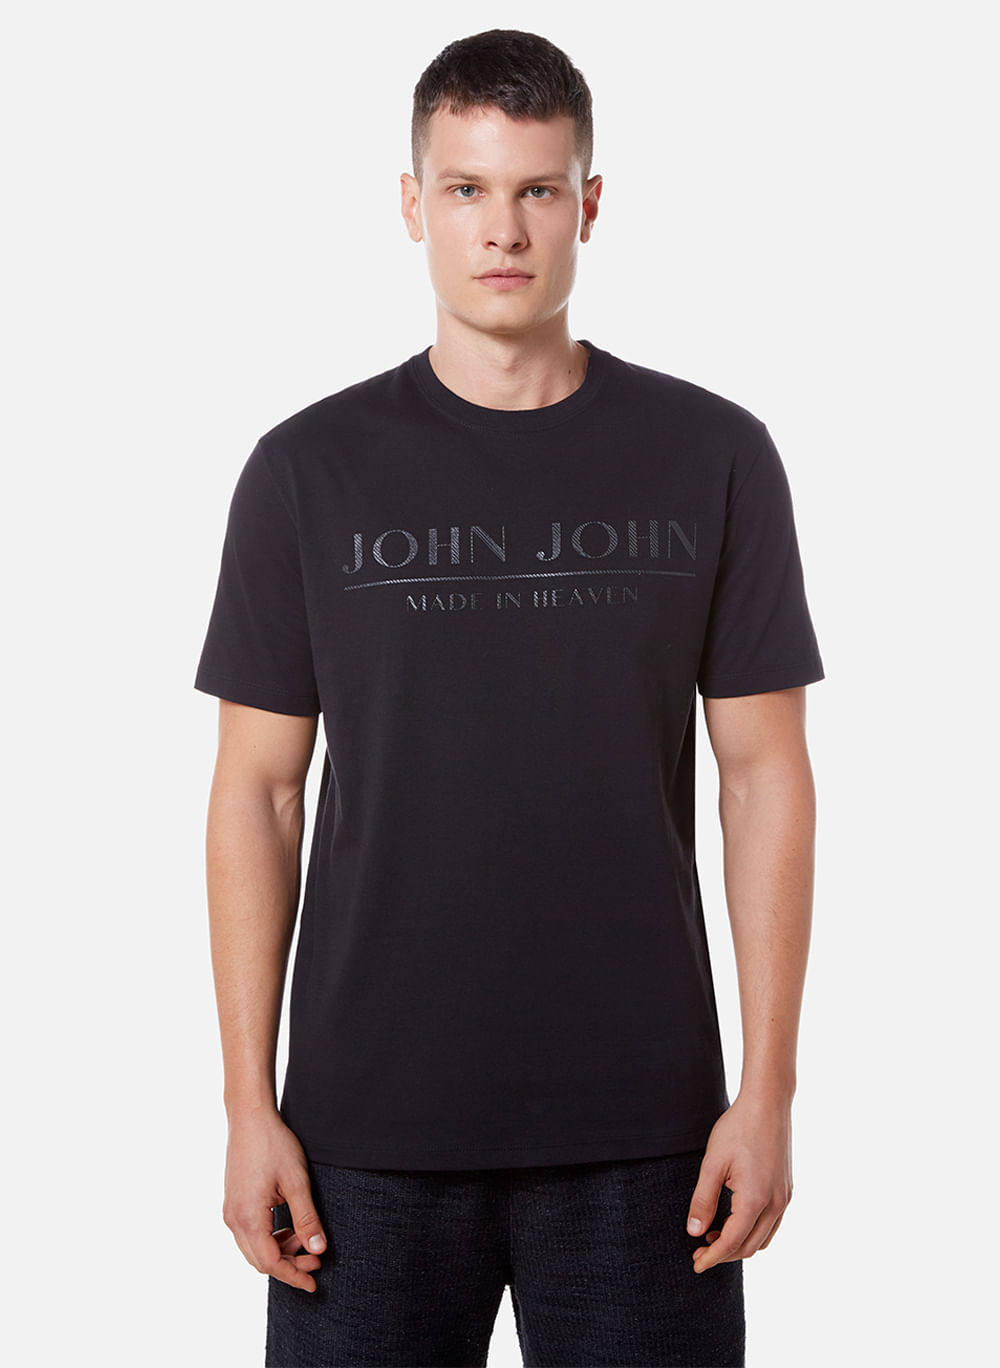 Camiseta John John Original Nova - Roupas - Ingleses do Rio Vermelho,  Florianópolis 1248543055